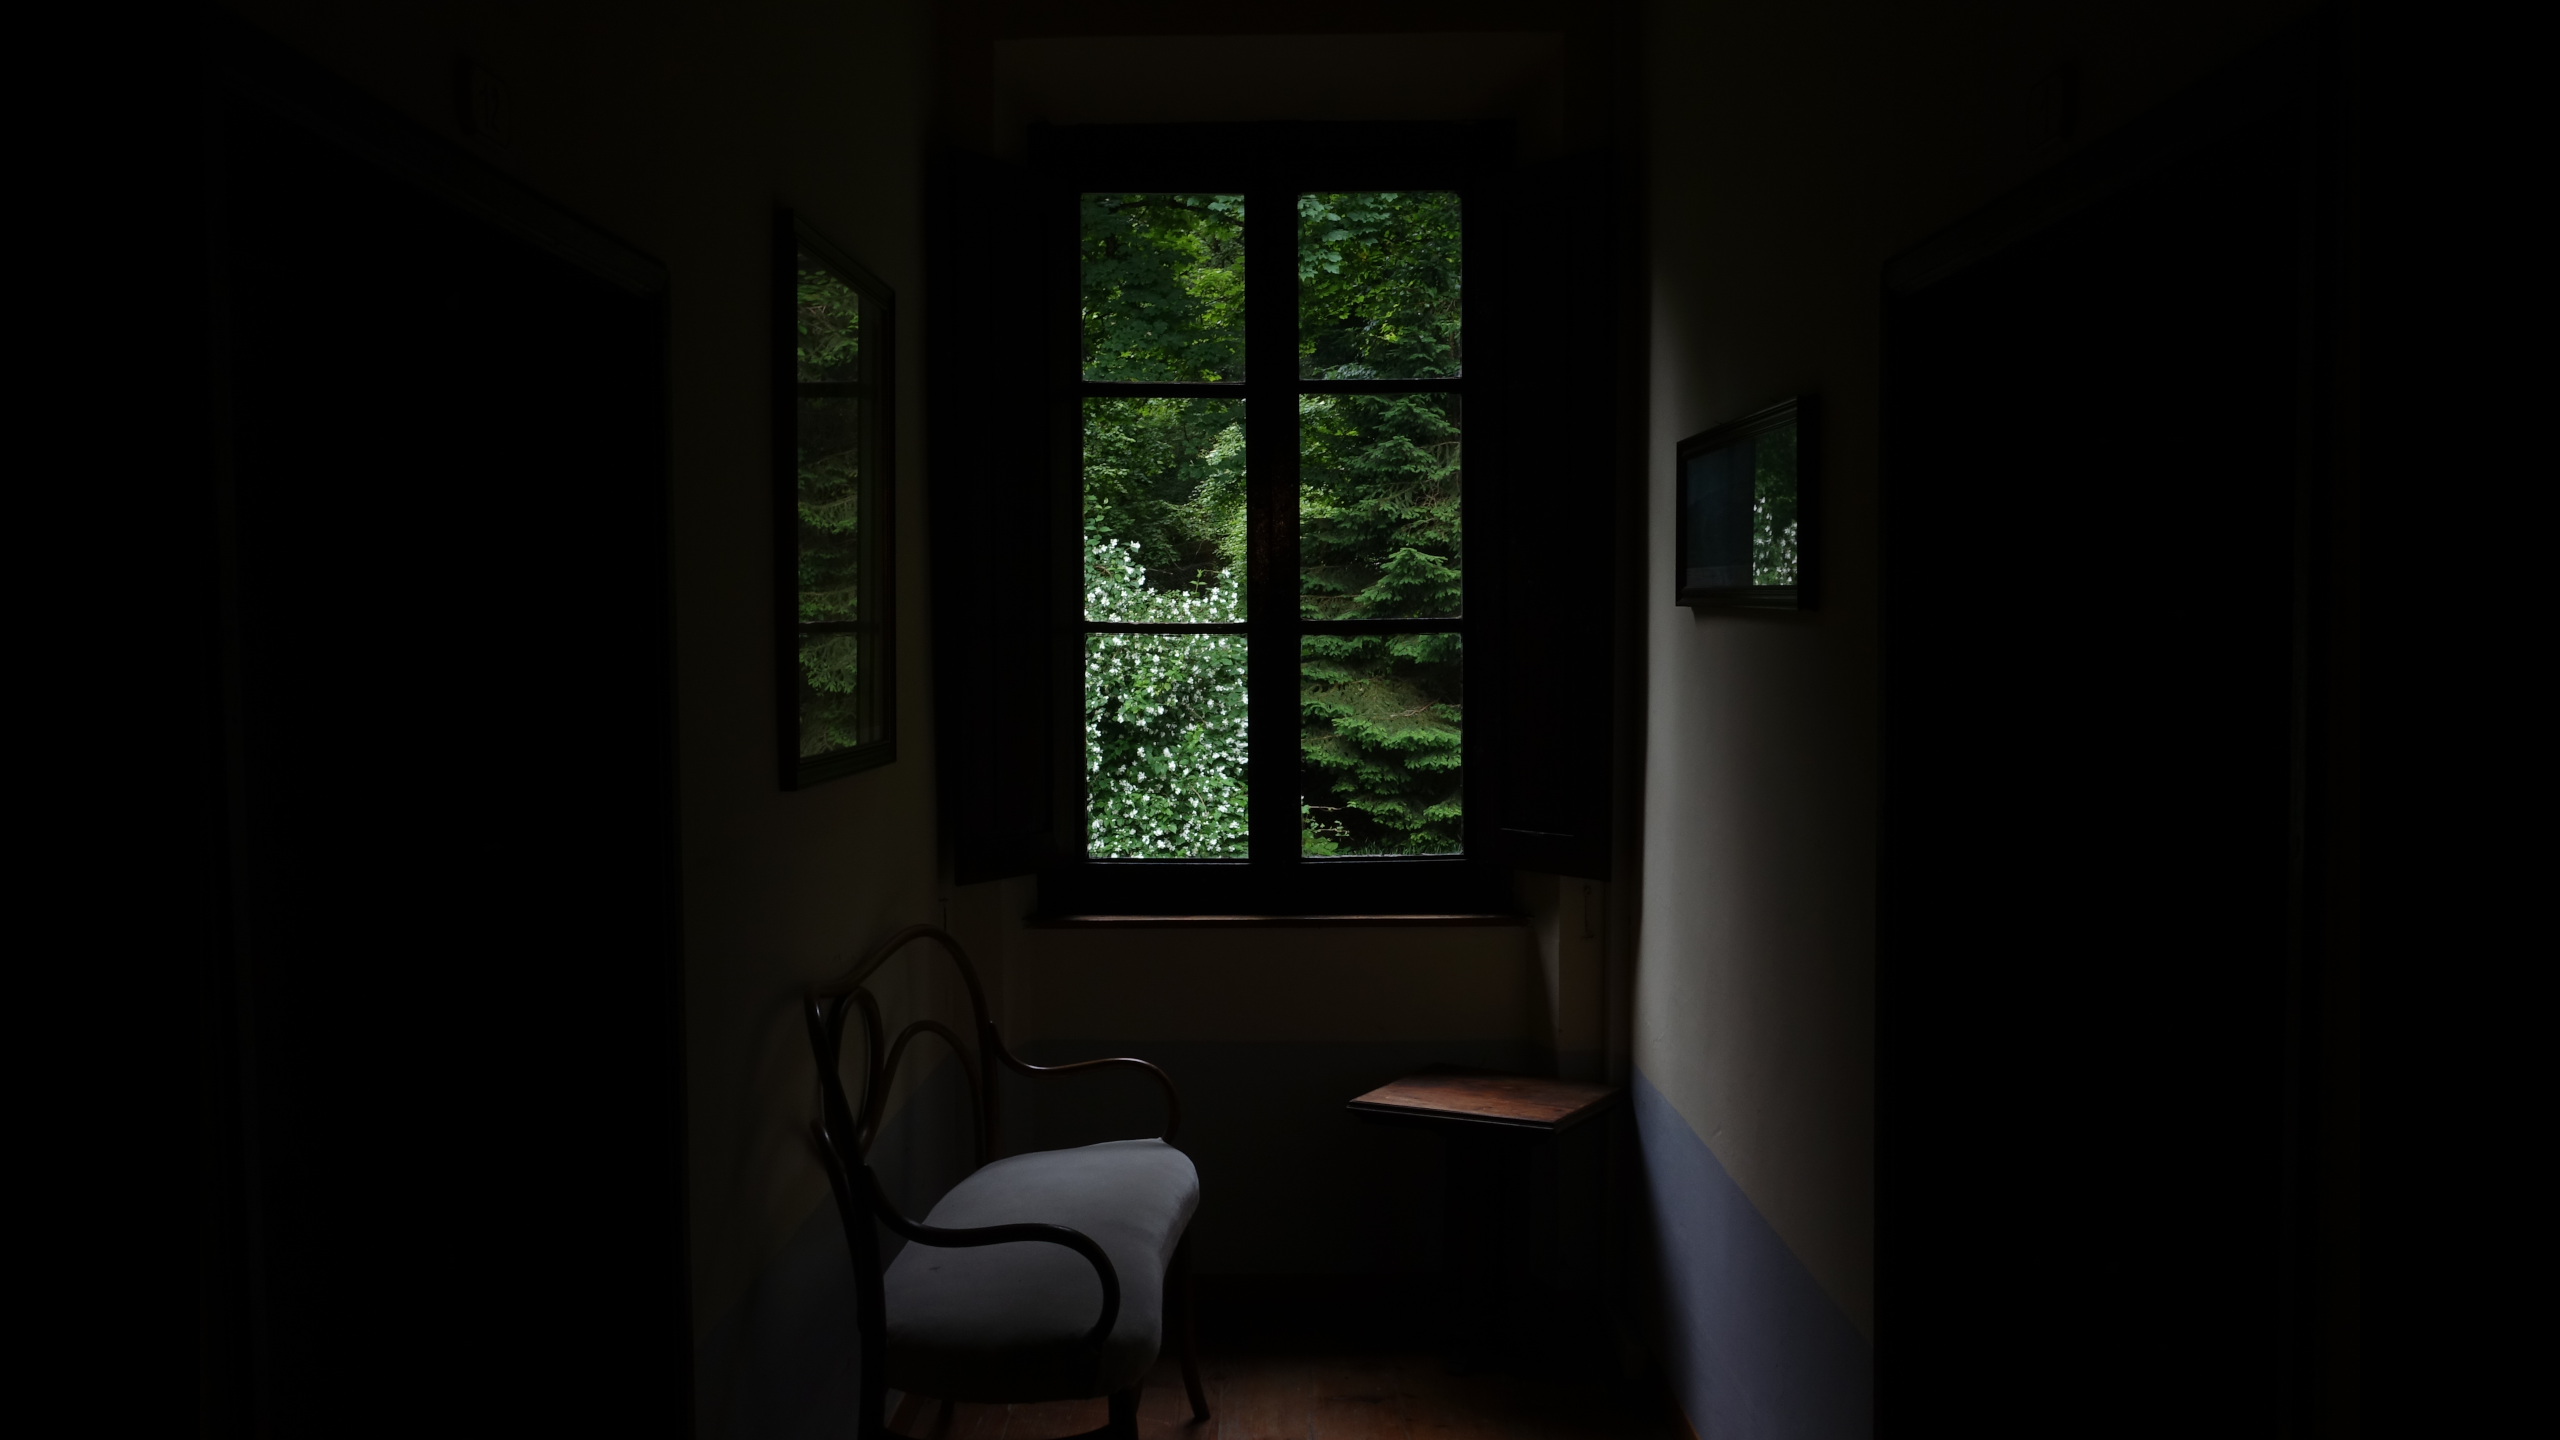 General 2560x1440 dark window room indoors interior low light